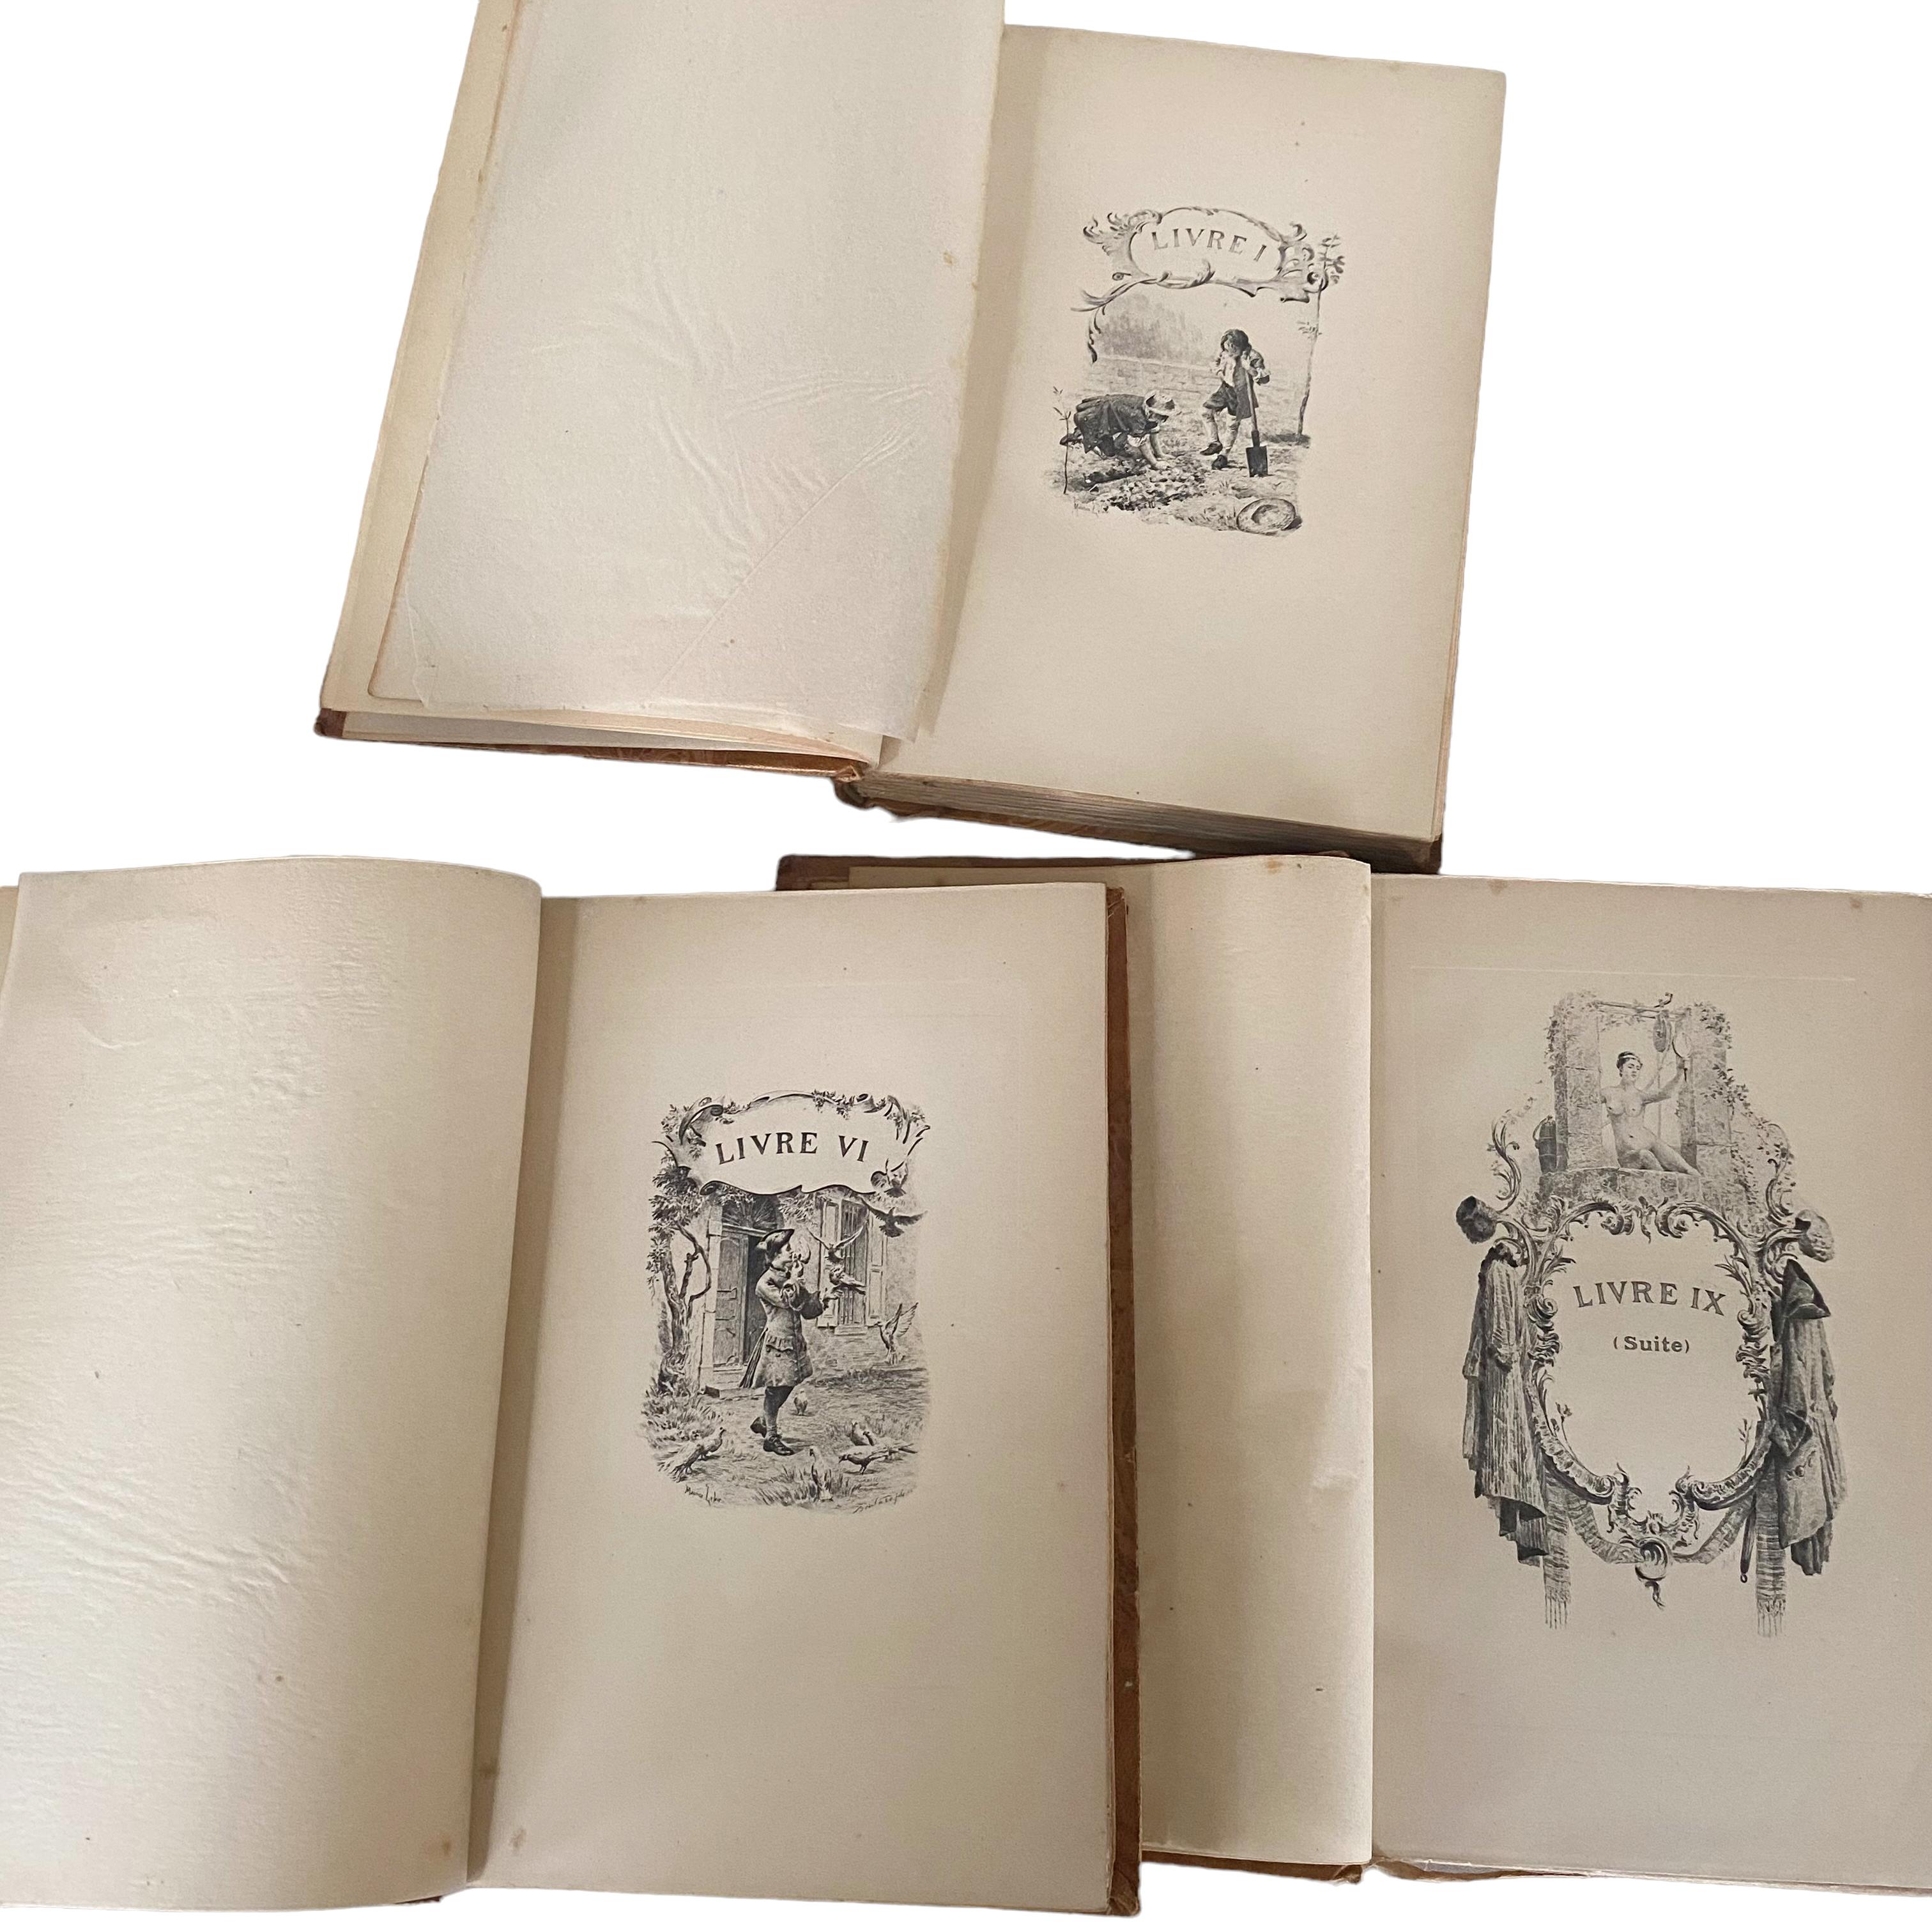 Edition Jules Tallendier. 
LES CONFESSIONS von Jean-Jacquard ROUSSAU in 3 Bänden.
Insgesamt sehr guter Zustand in Anbetracht seines Alters (erschienen zwischen 1900 und 1915). Ich glaube nicht, dass es benutzt wurde. Einige Flecken und